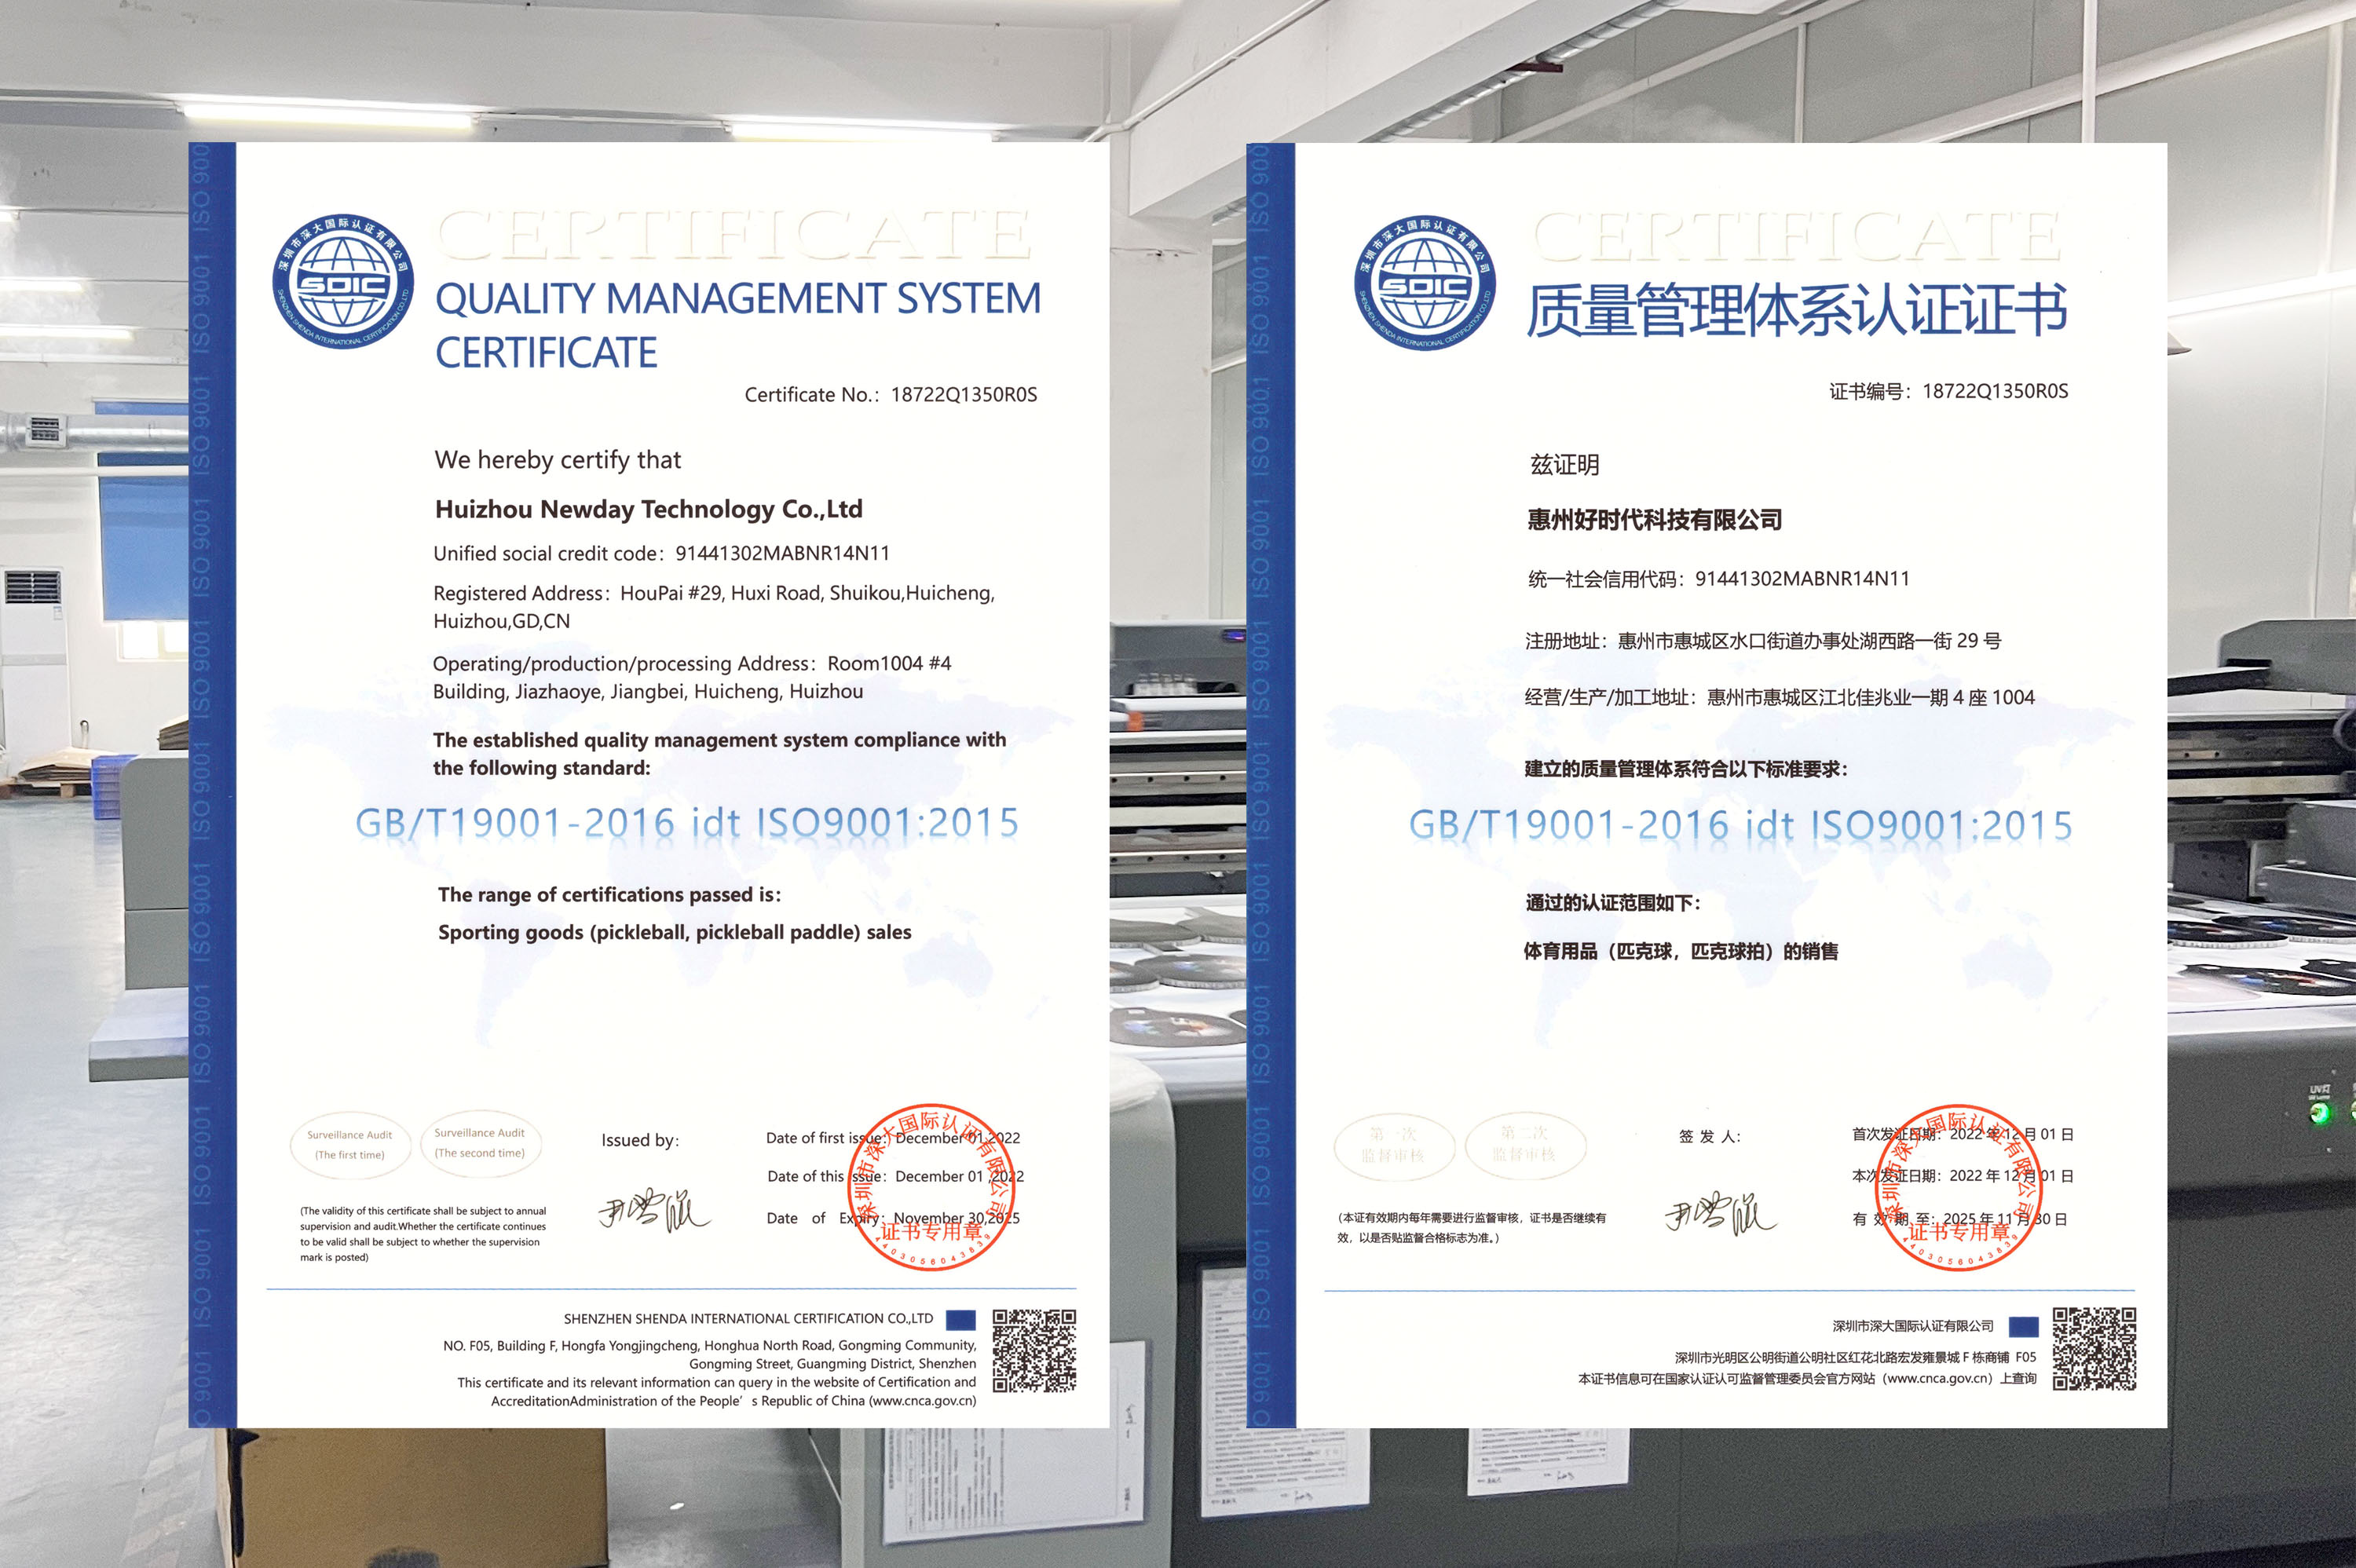 Giấy chứng nhận ISO9001, chúng tôi đã nhận được nó!